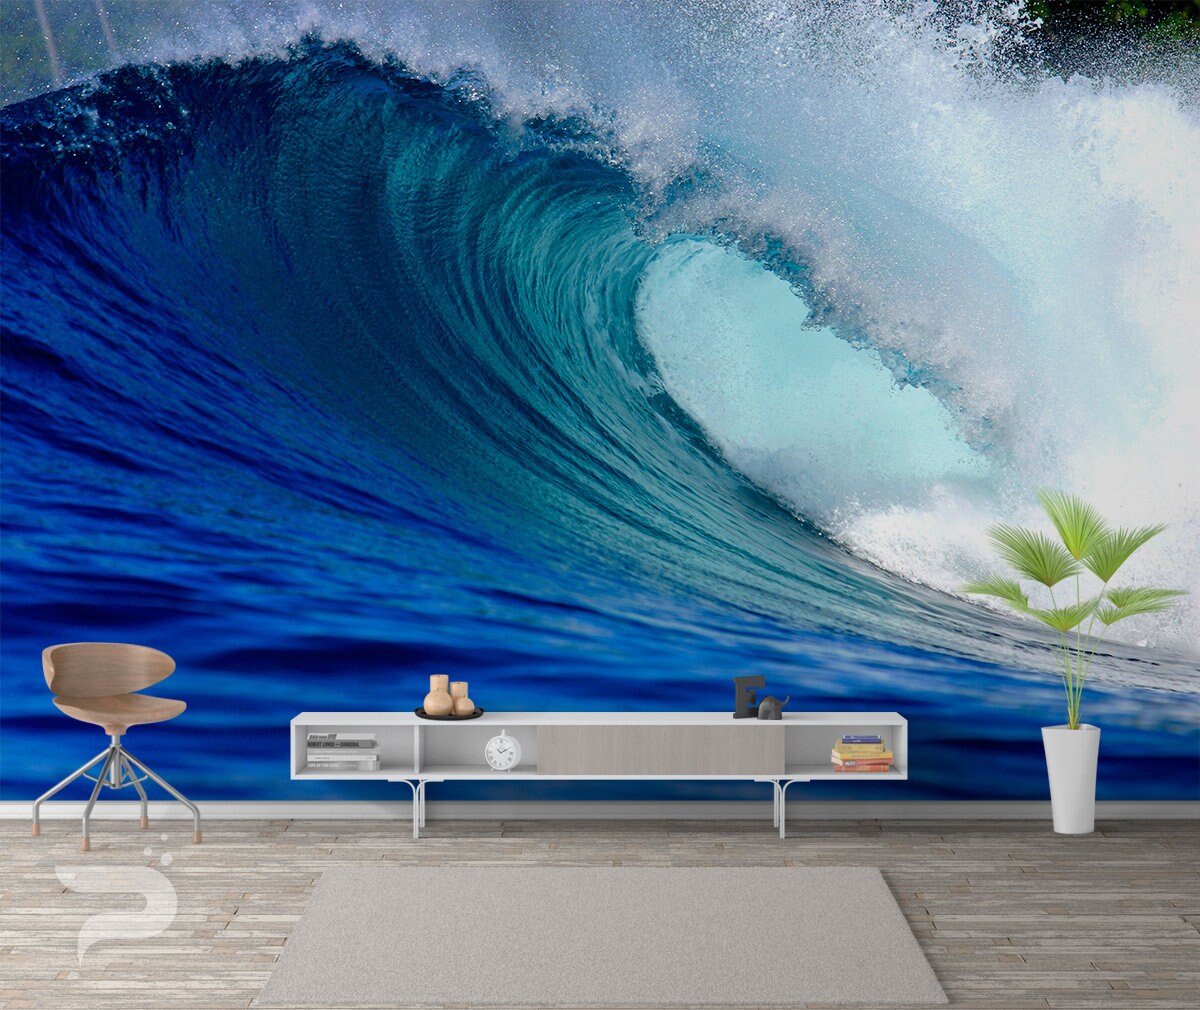 The Perfect Wave MURAL, Ocean Wallpaper, Large Wall Mural, Self